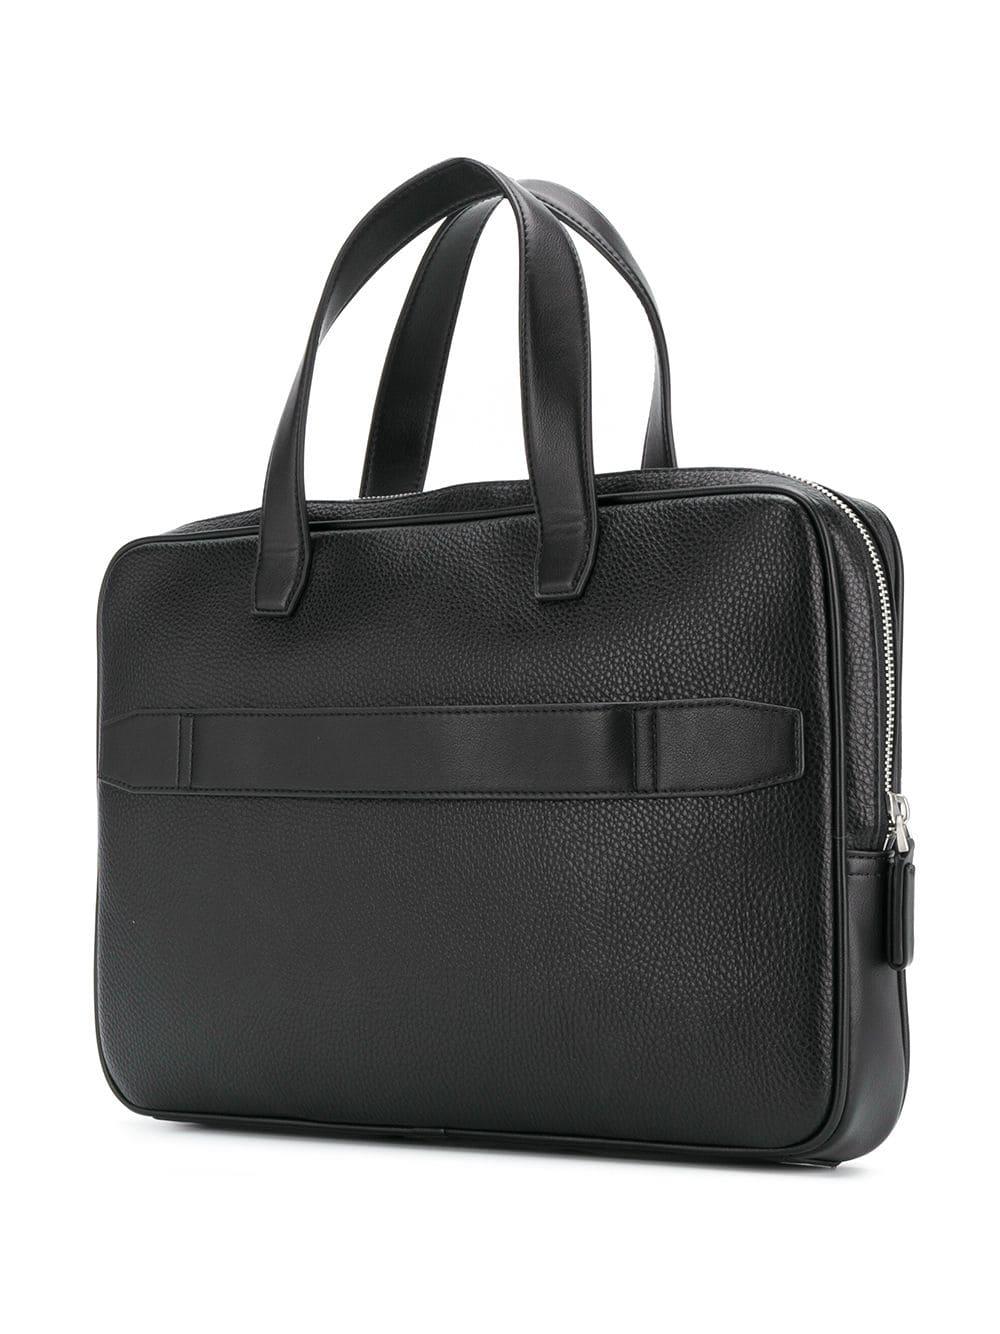 Tommy Hilfiger Downtown Laptop Bag in Black for Men - Lyst